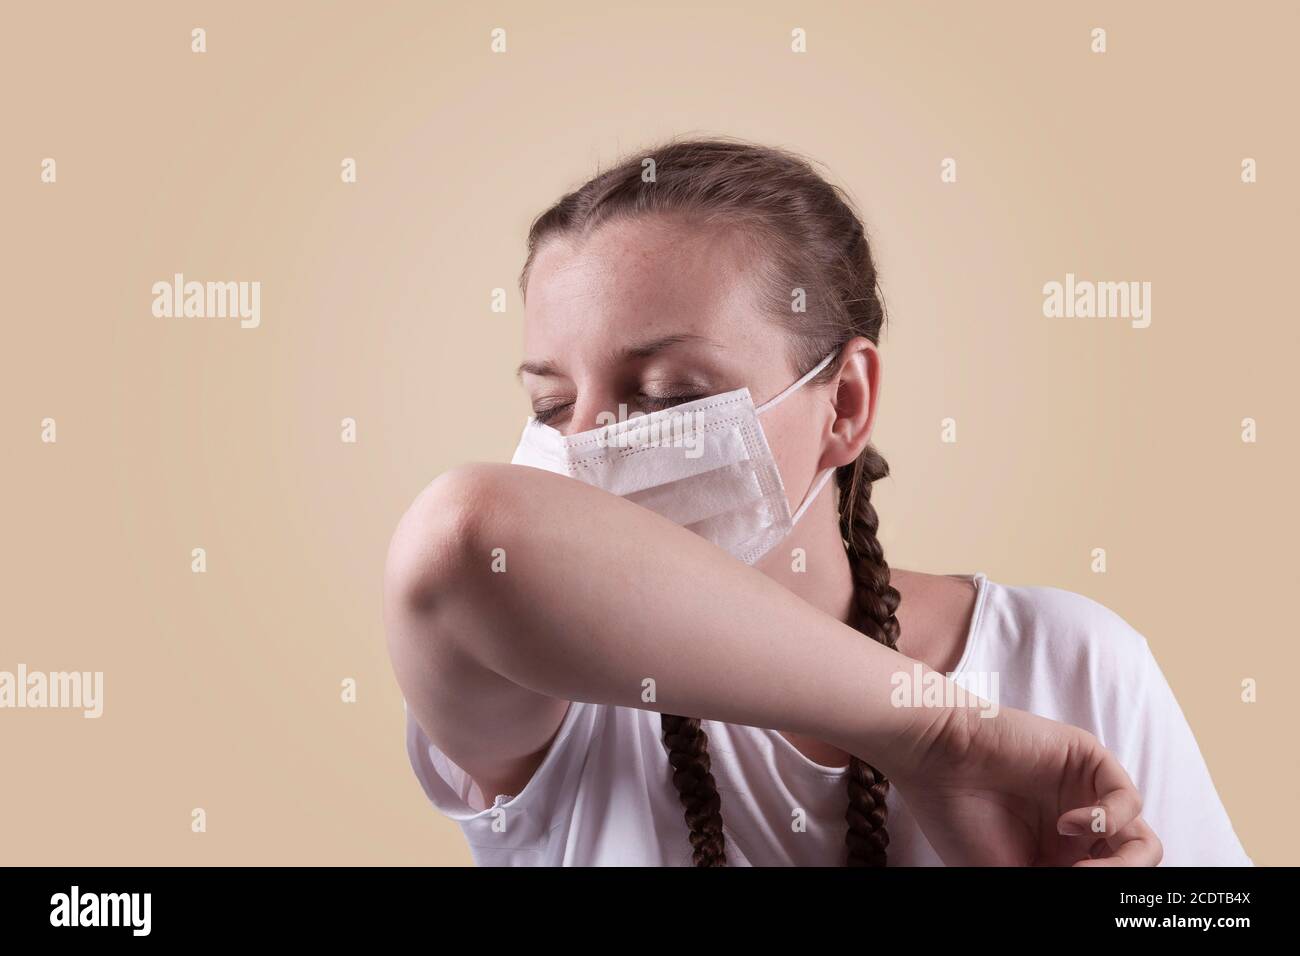 Mädchen in einer medizinischen Maske. Mädchen auf einem gelben Hintergrund. Das Mädchen niest, hustet. Stockfoto